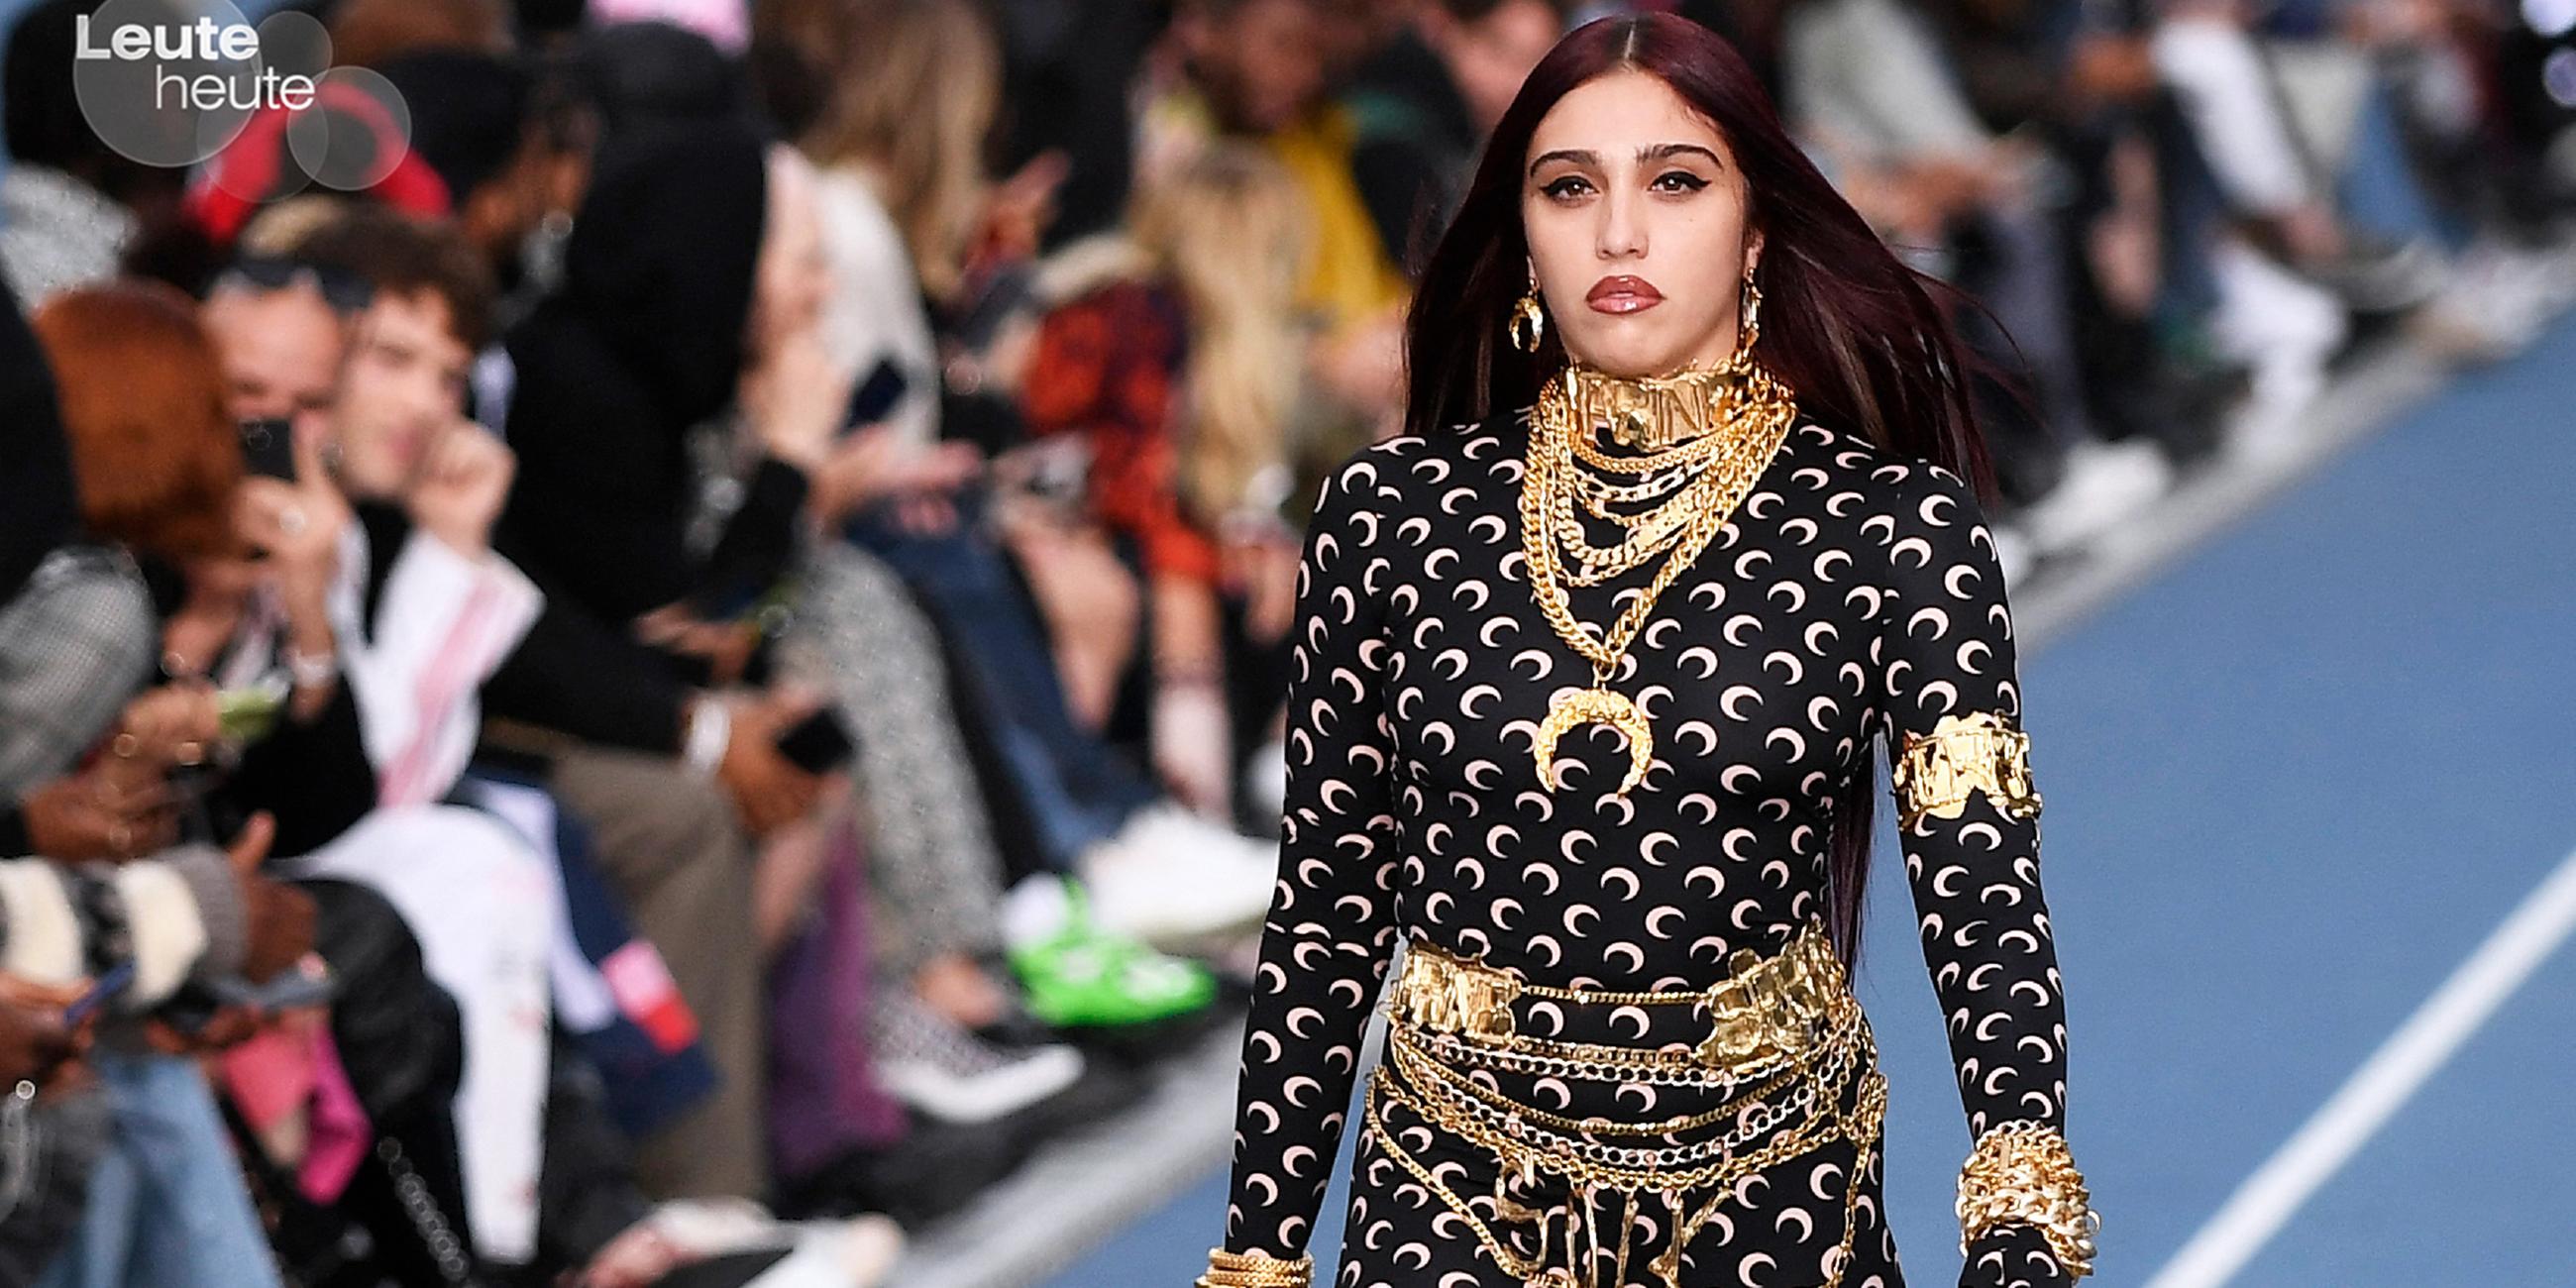 Lourdes Leon überzeugt bei ihrem Auftritt auf der Pariser Fashion Week. Die 25-jährige Tochter von Madonna arbeitet seit sechs Jahren erfolgreich als Model.